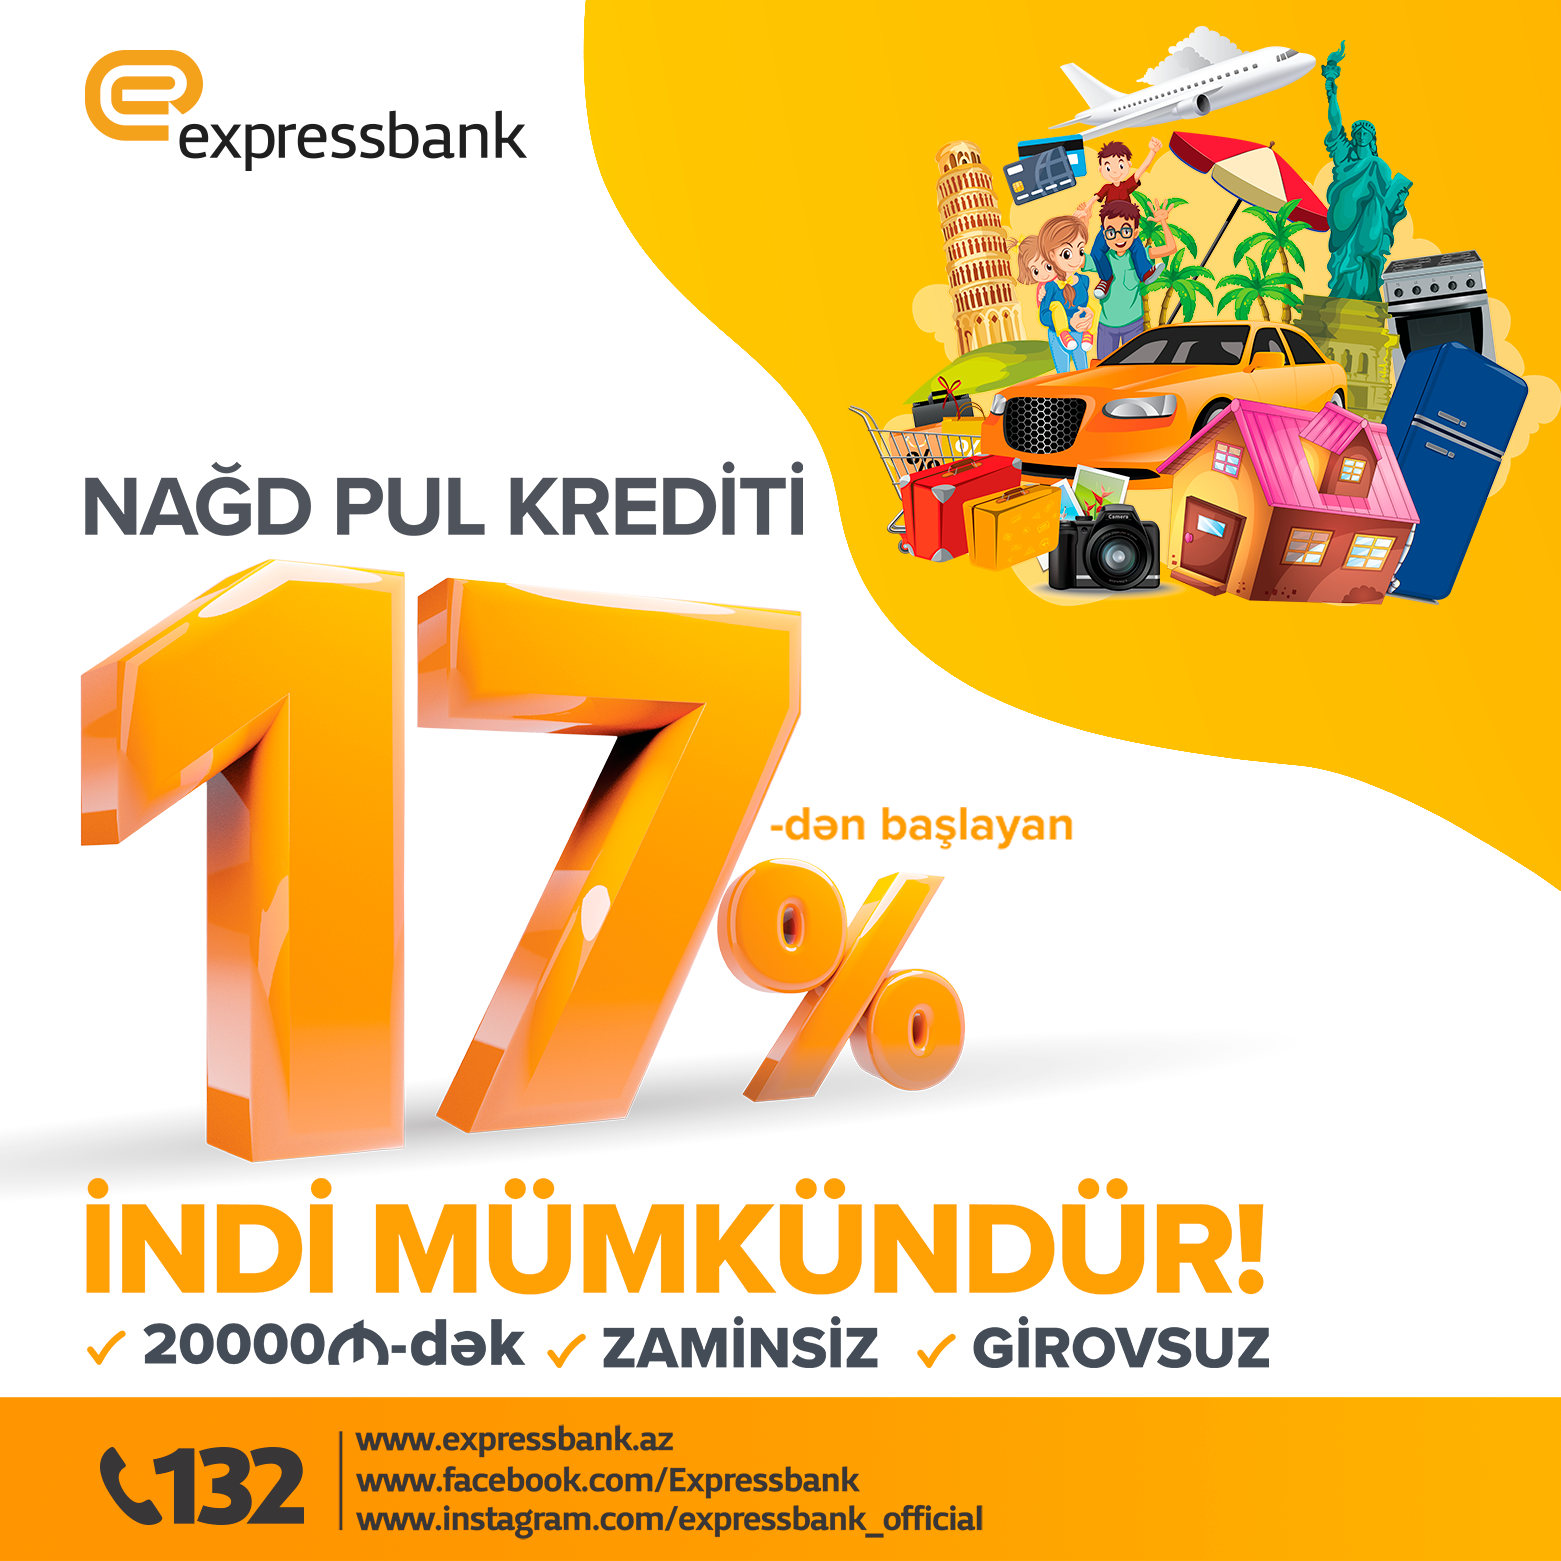 Expressbank снизил годовую ставку по кредитам наличными до 17%